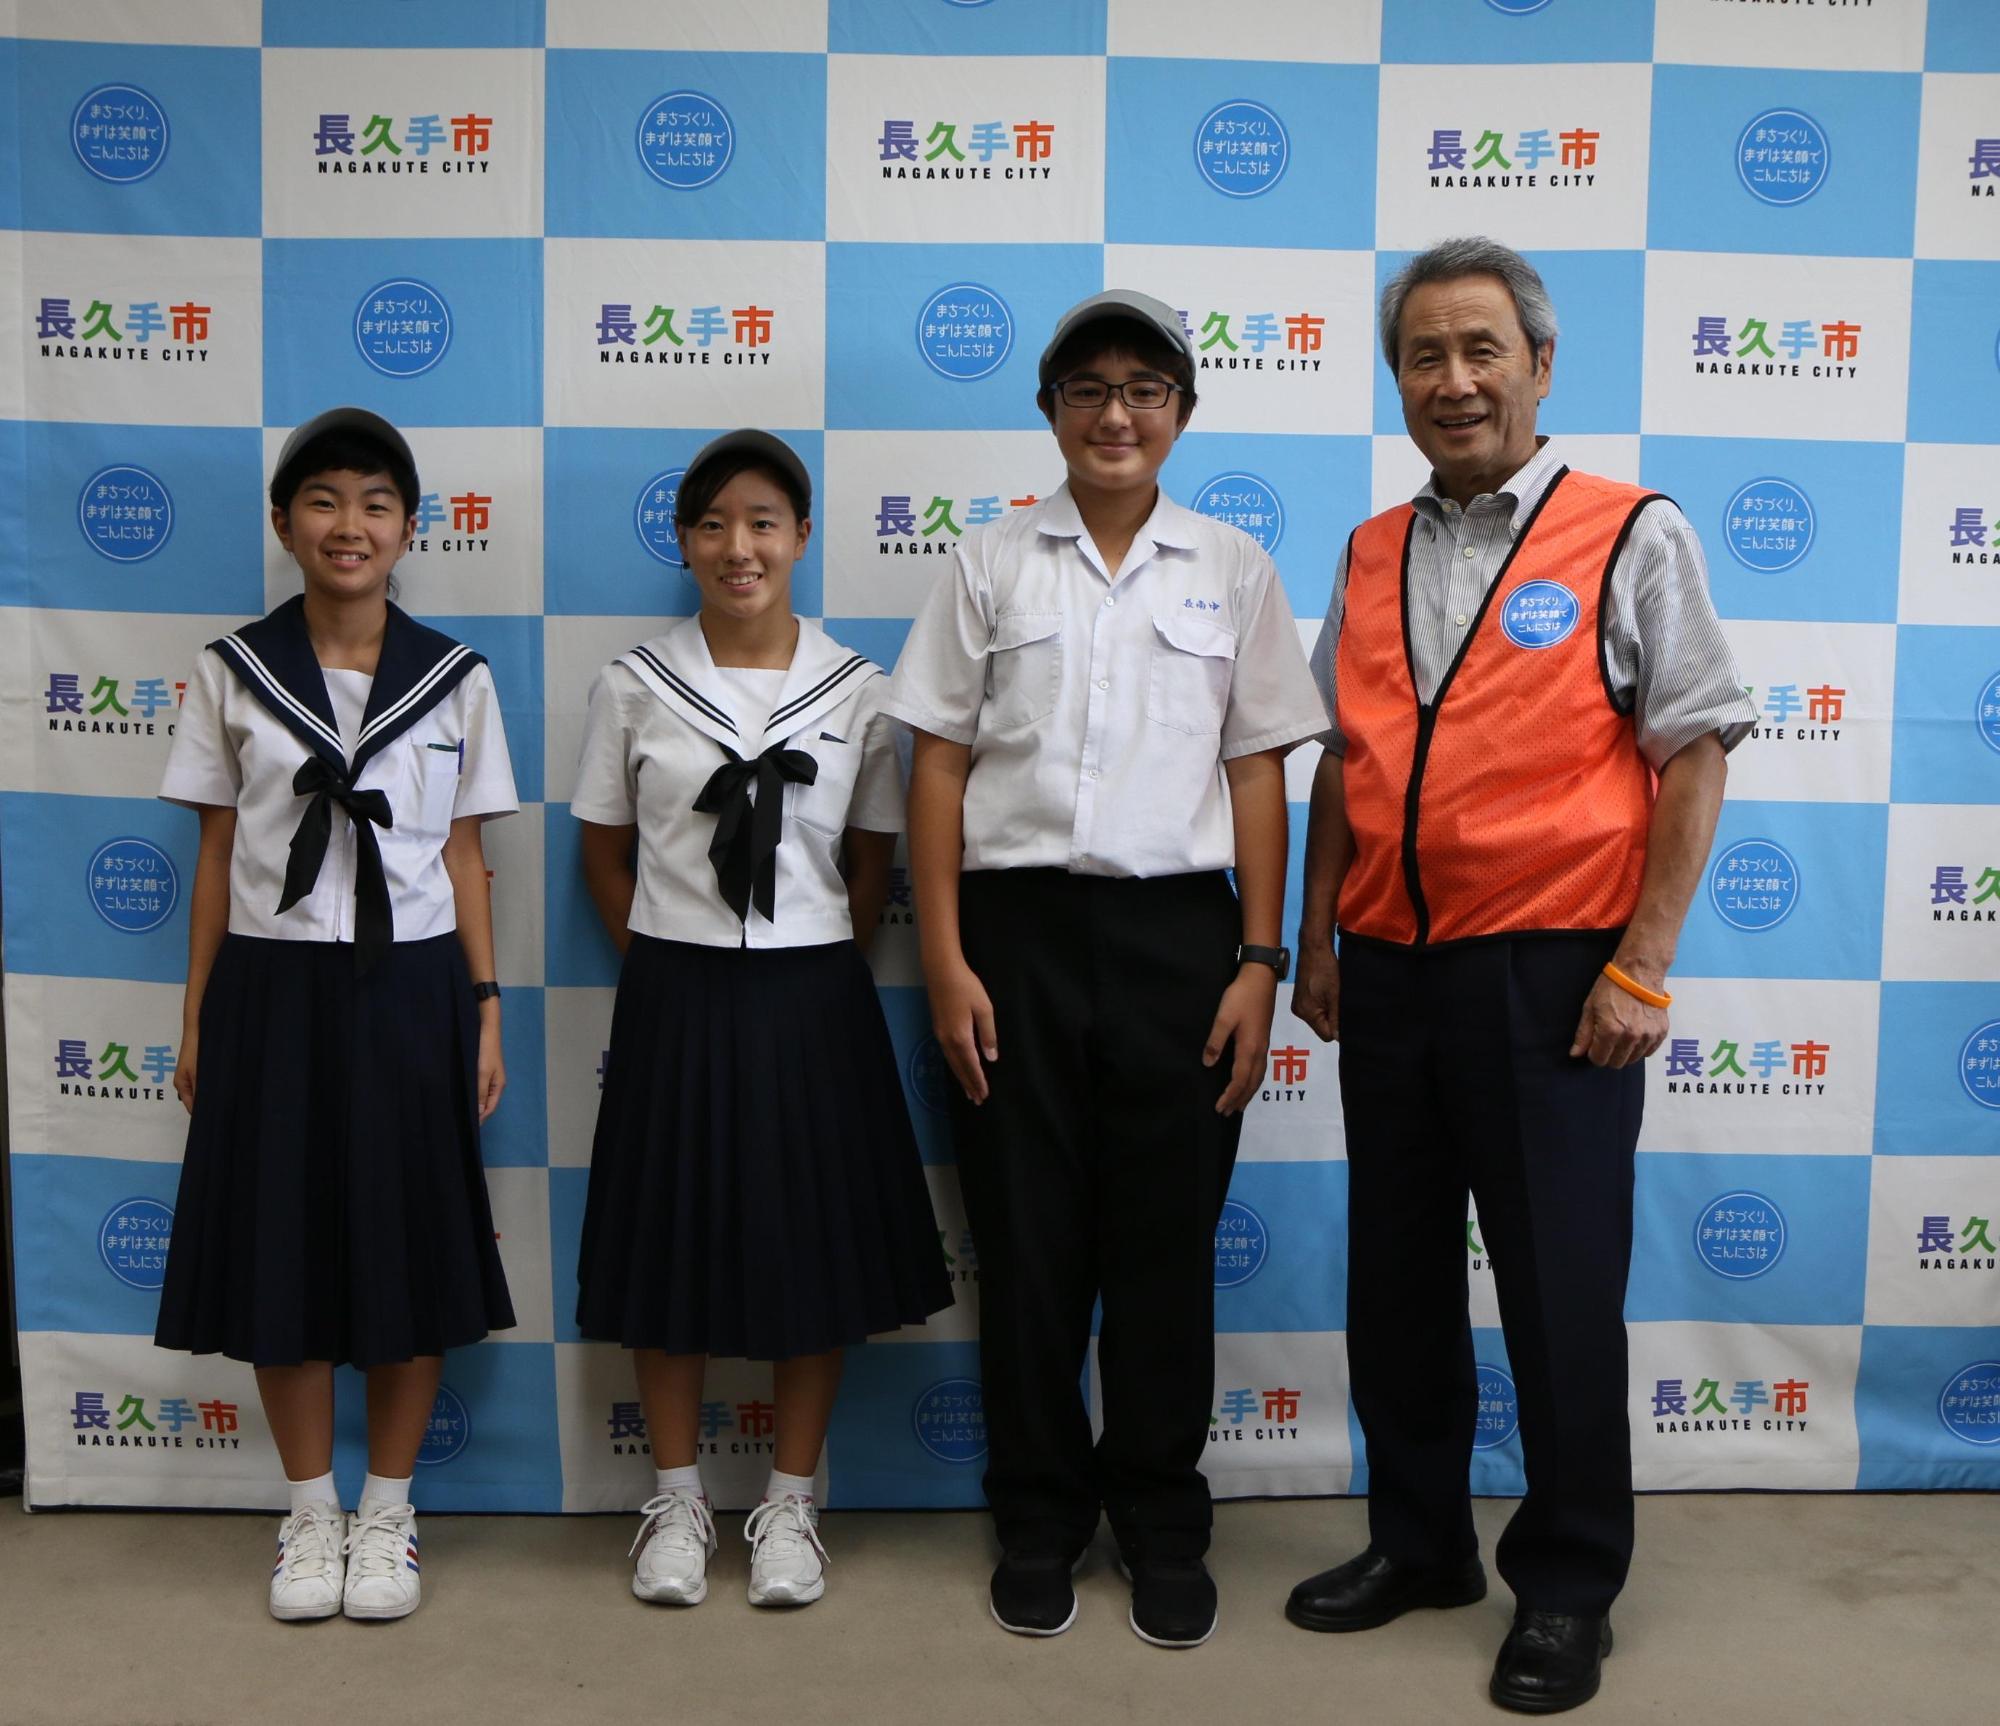 女子生徒2名と男子生徒1名、市長が笑顔で並んで写っている写真